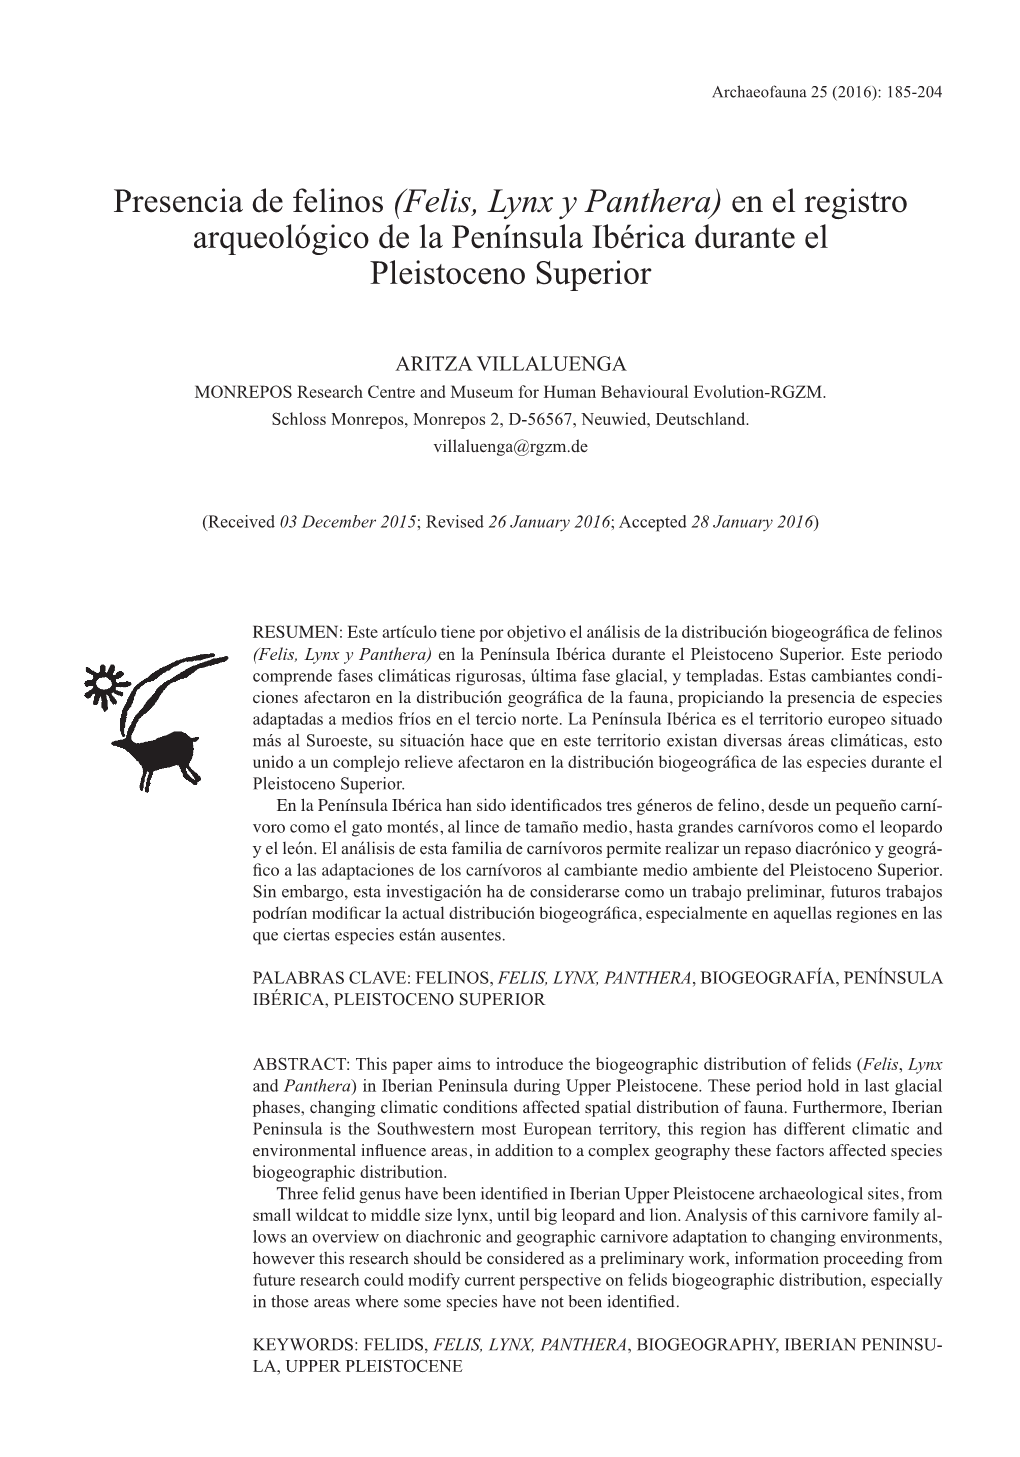 Presencia De Felinos (Felis, Lynx Y Panthera) En El Registro Arqueológico De La Península Ibérica Durante El Pleistoceno Superior